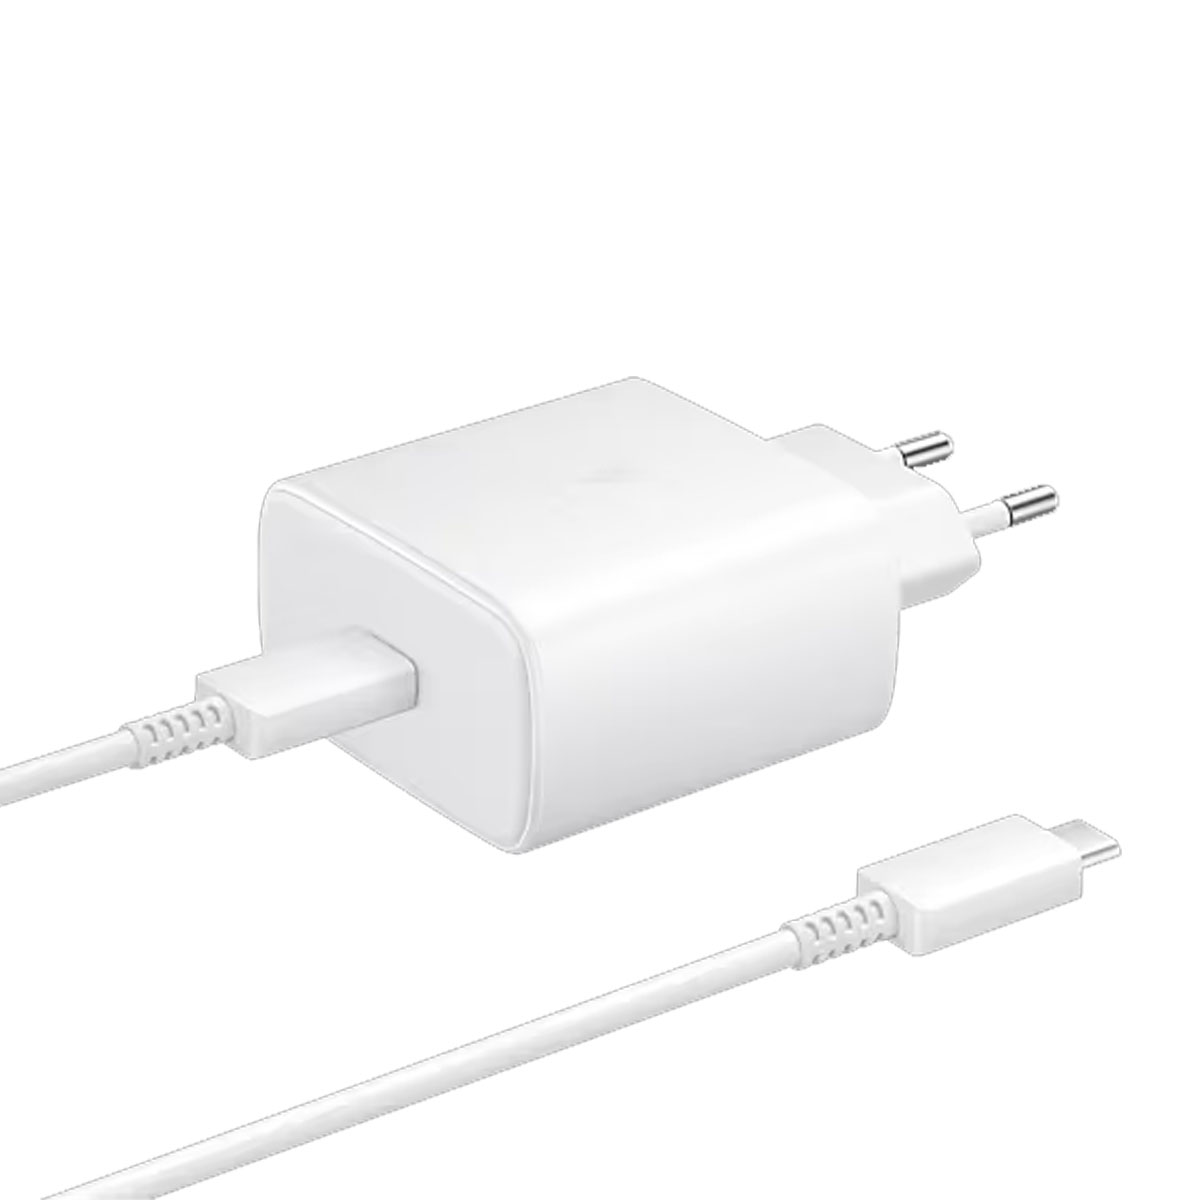 СЗУ (Сетевое зарядное устройство) EP-TA845 с кабелем USB Type C на USB Type C, 45W, 1 USB Type C, длина 1 метр, цвет белый